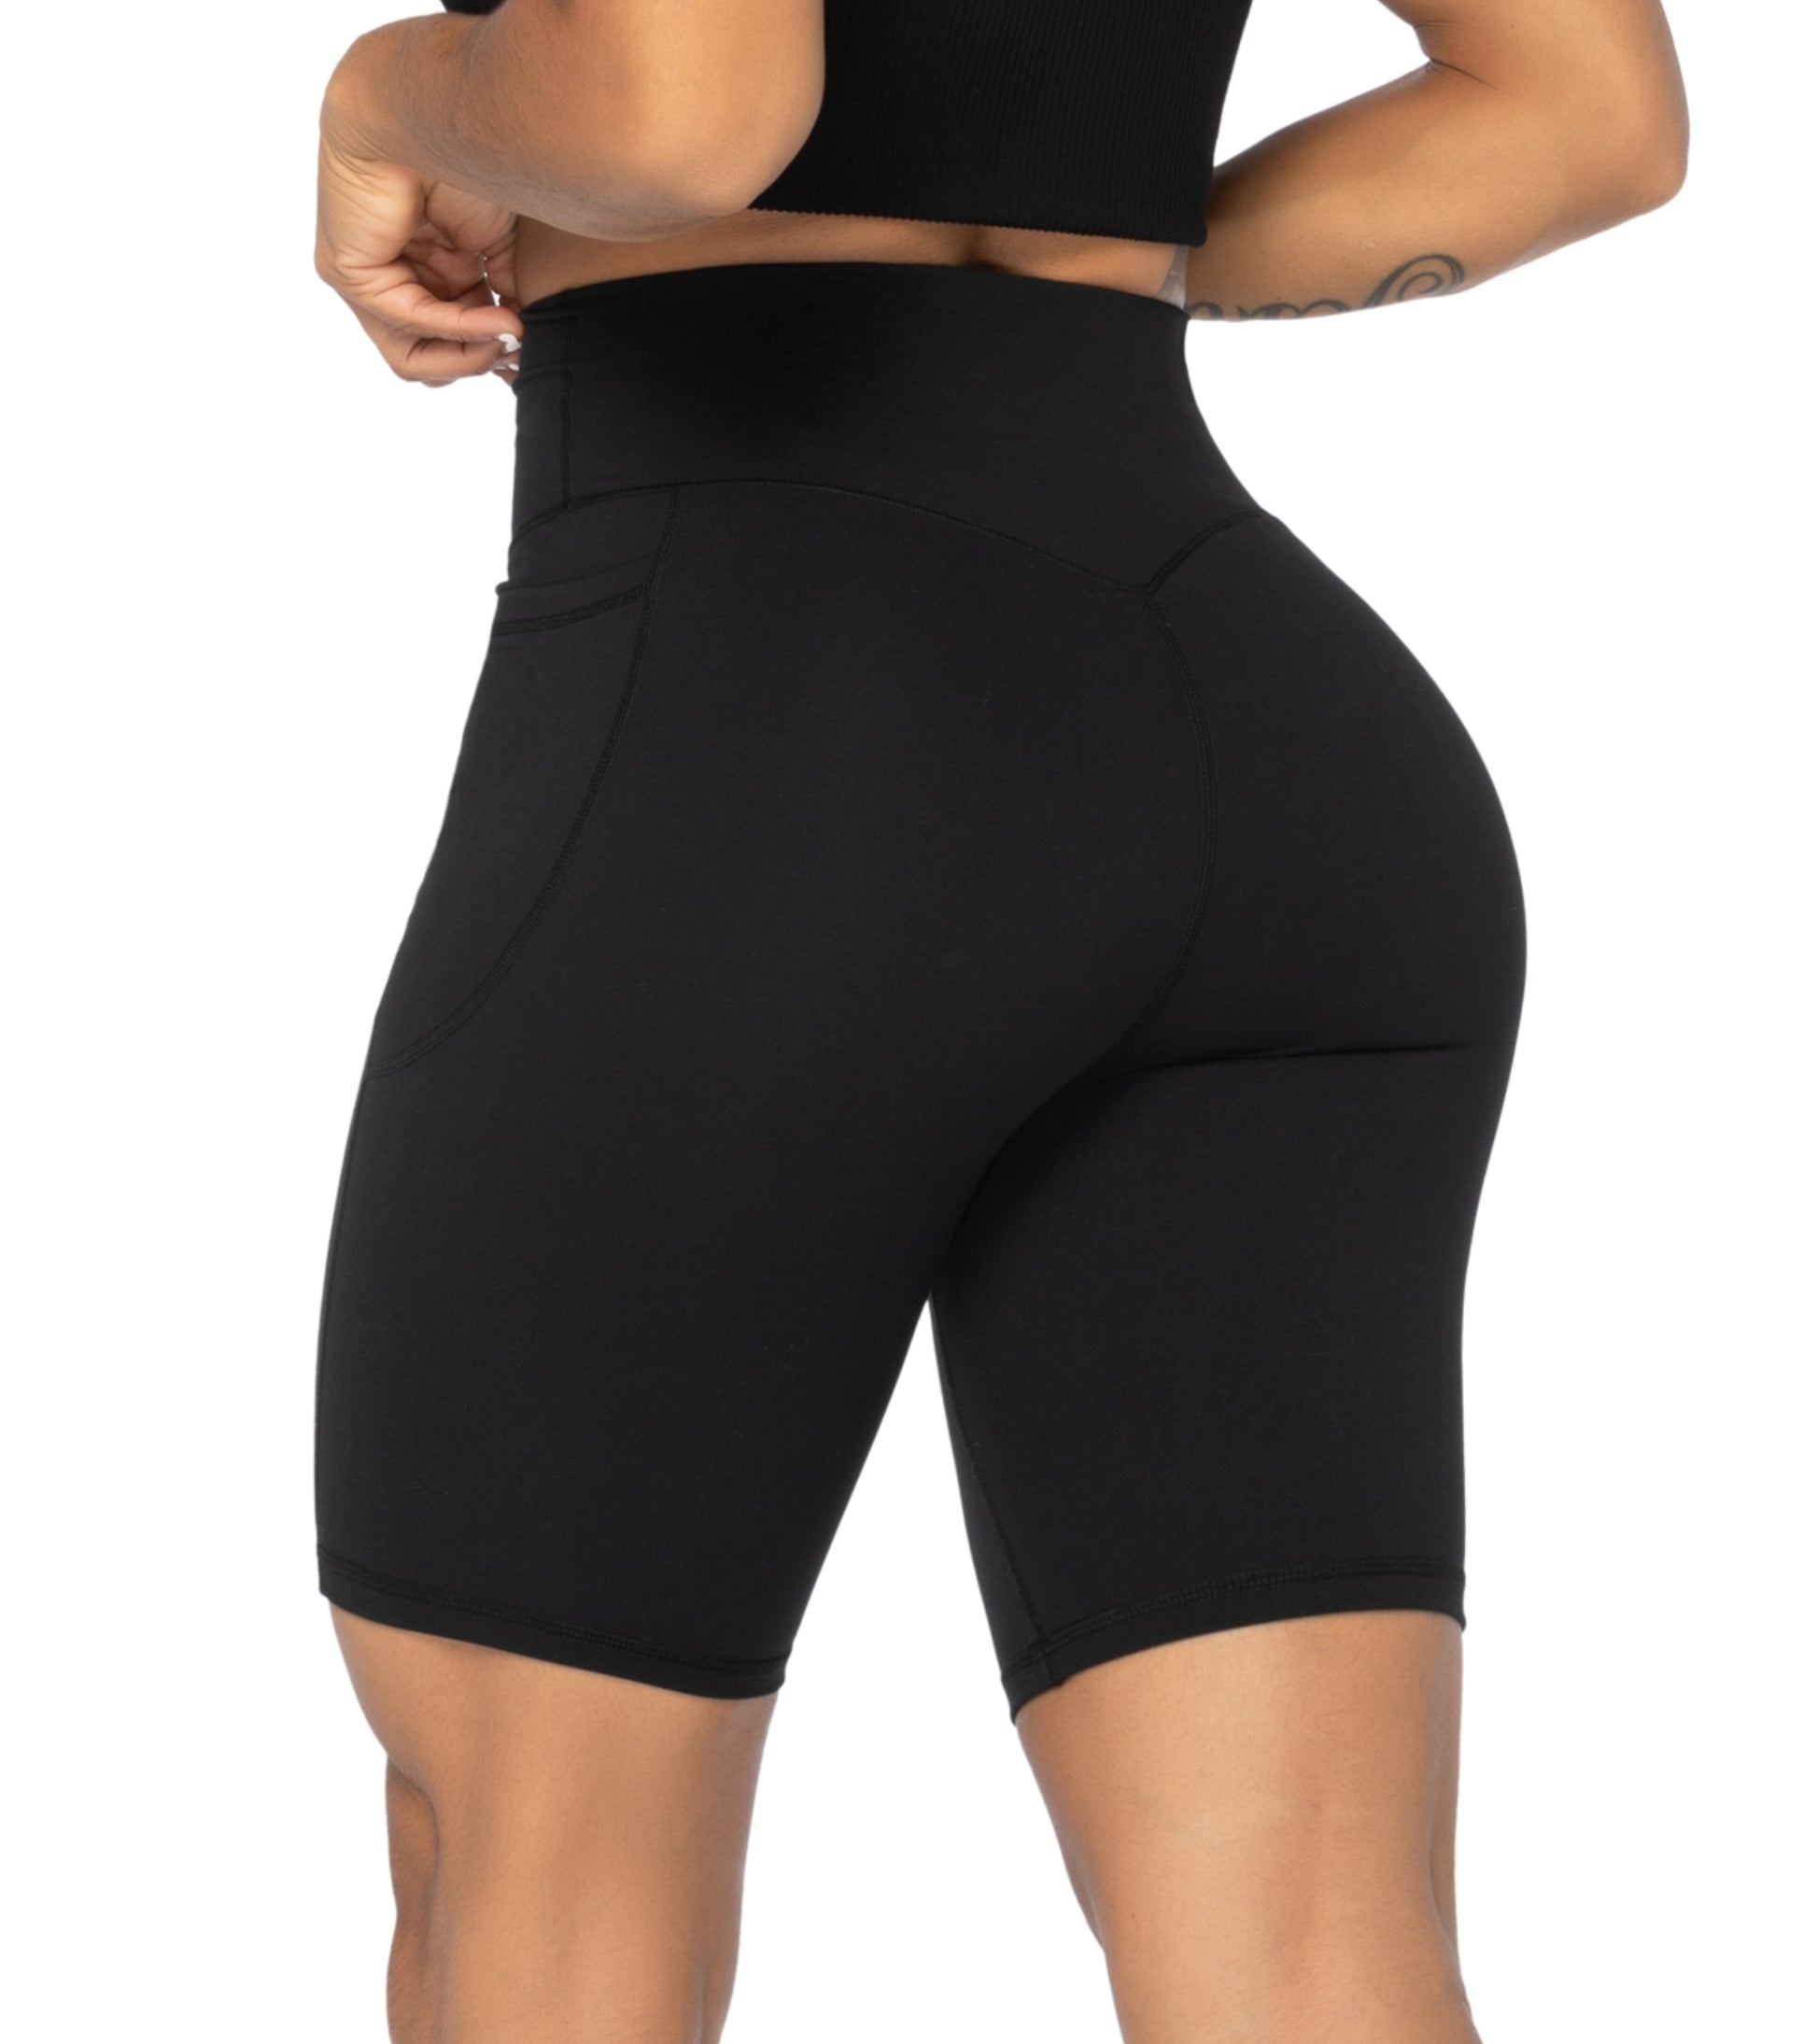 Buy Sunzel No Front Seam High Waist Biker Shorts for Women, Squat